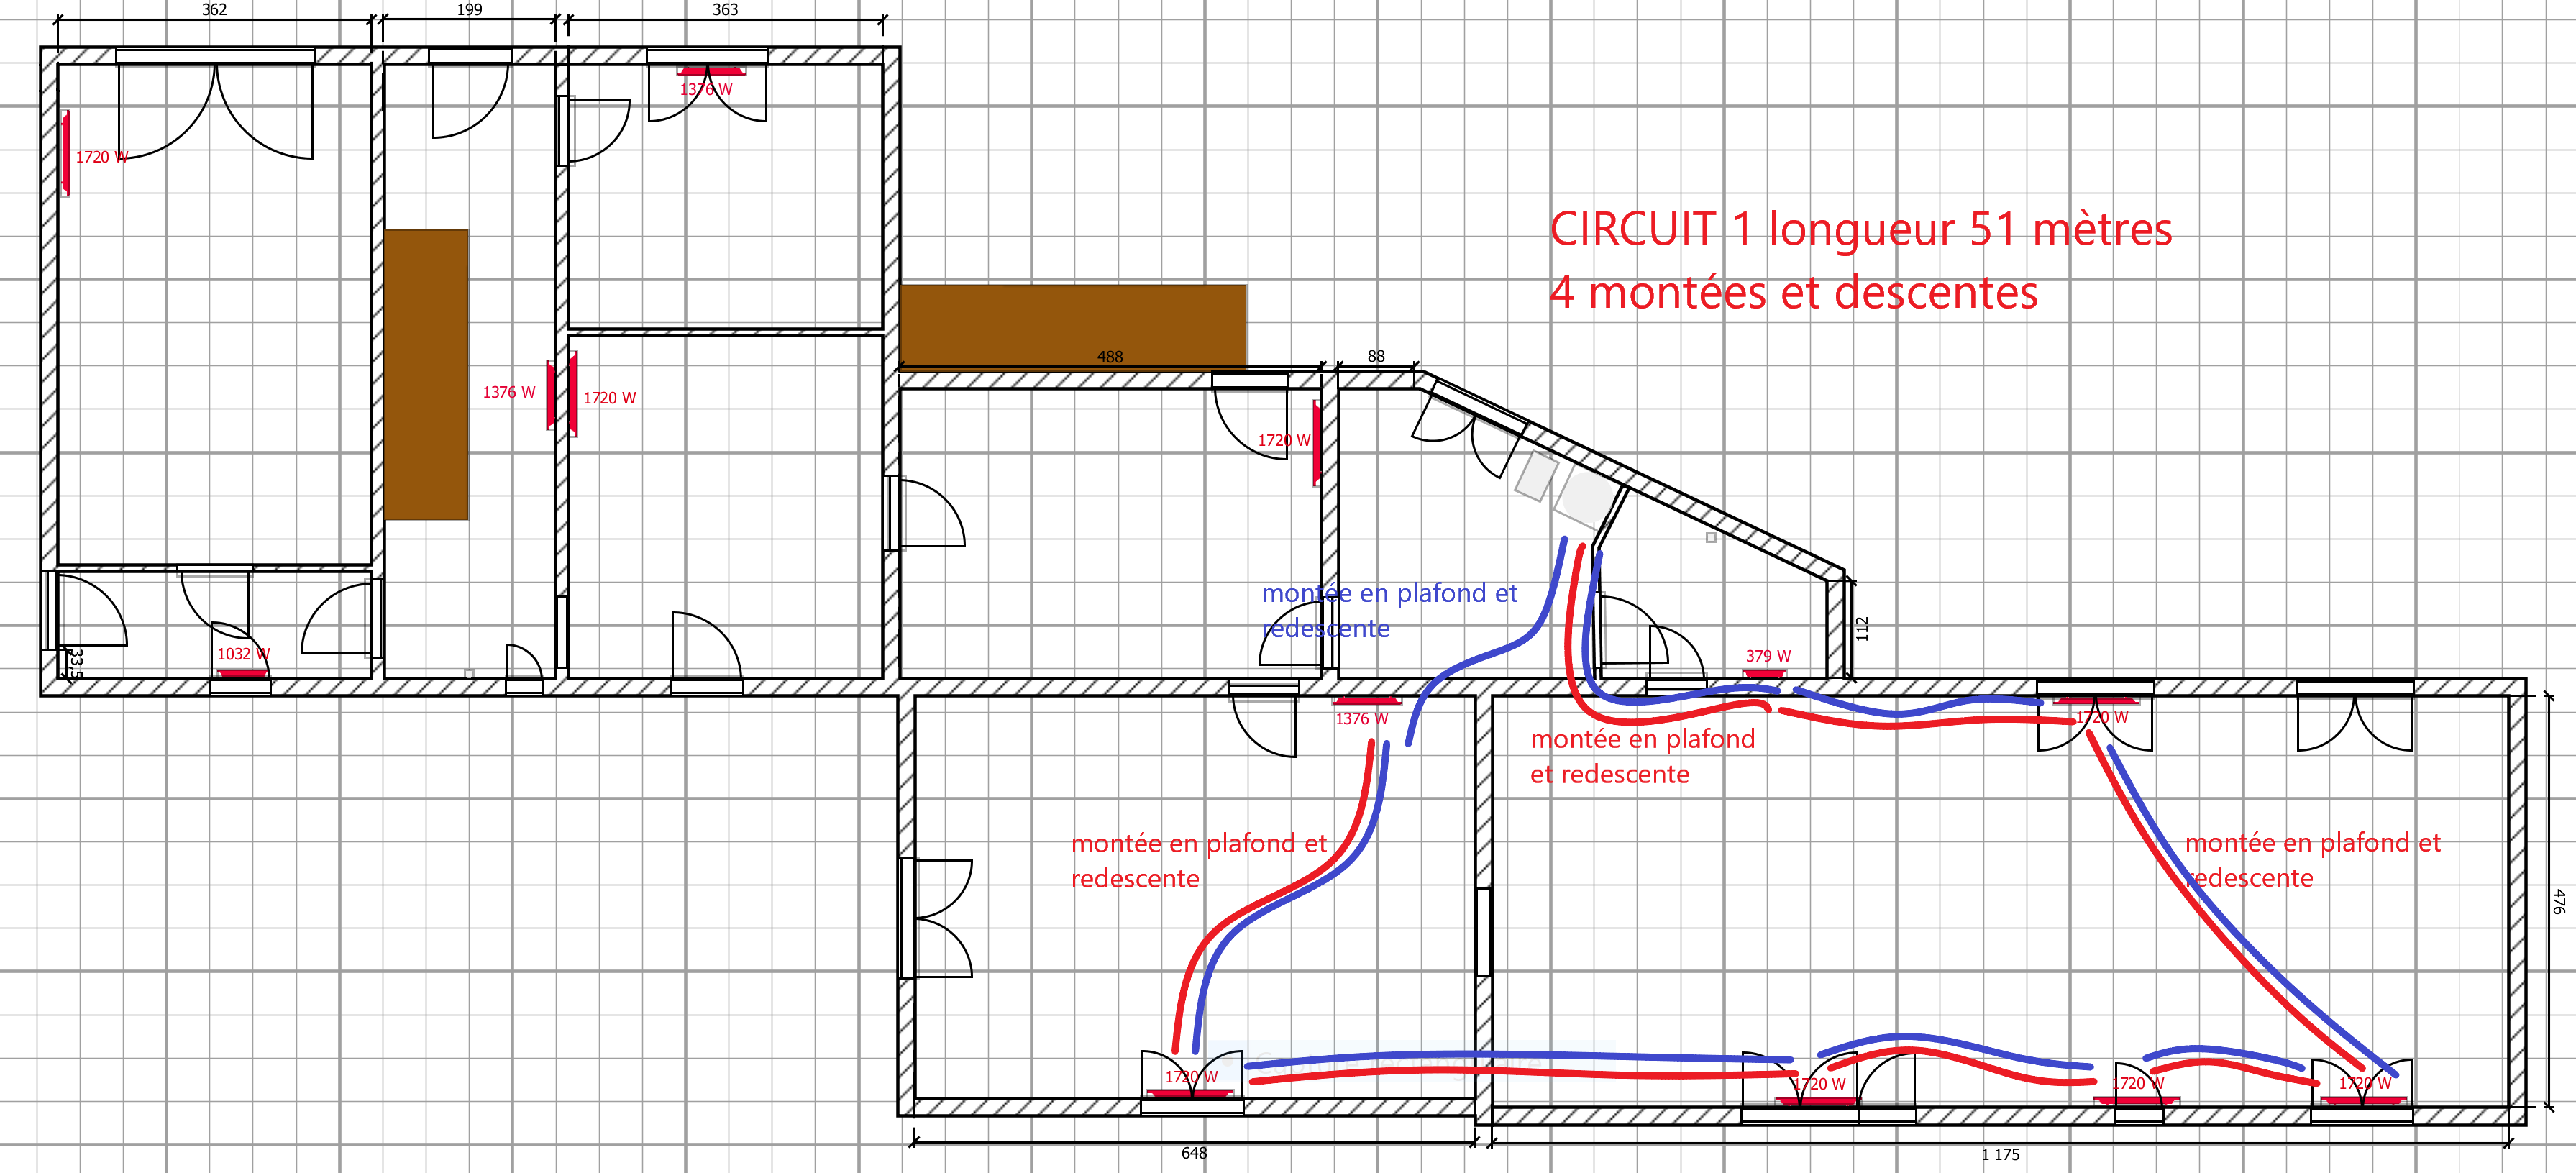 plan circuit 1 RDC.png, 377.14 kb, 3582 x 1631